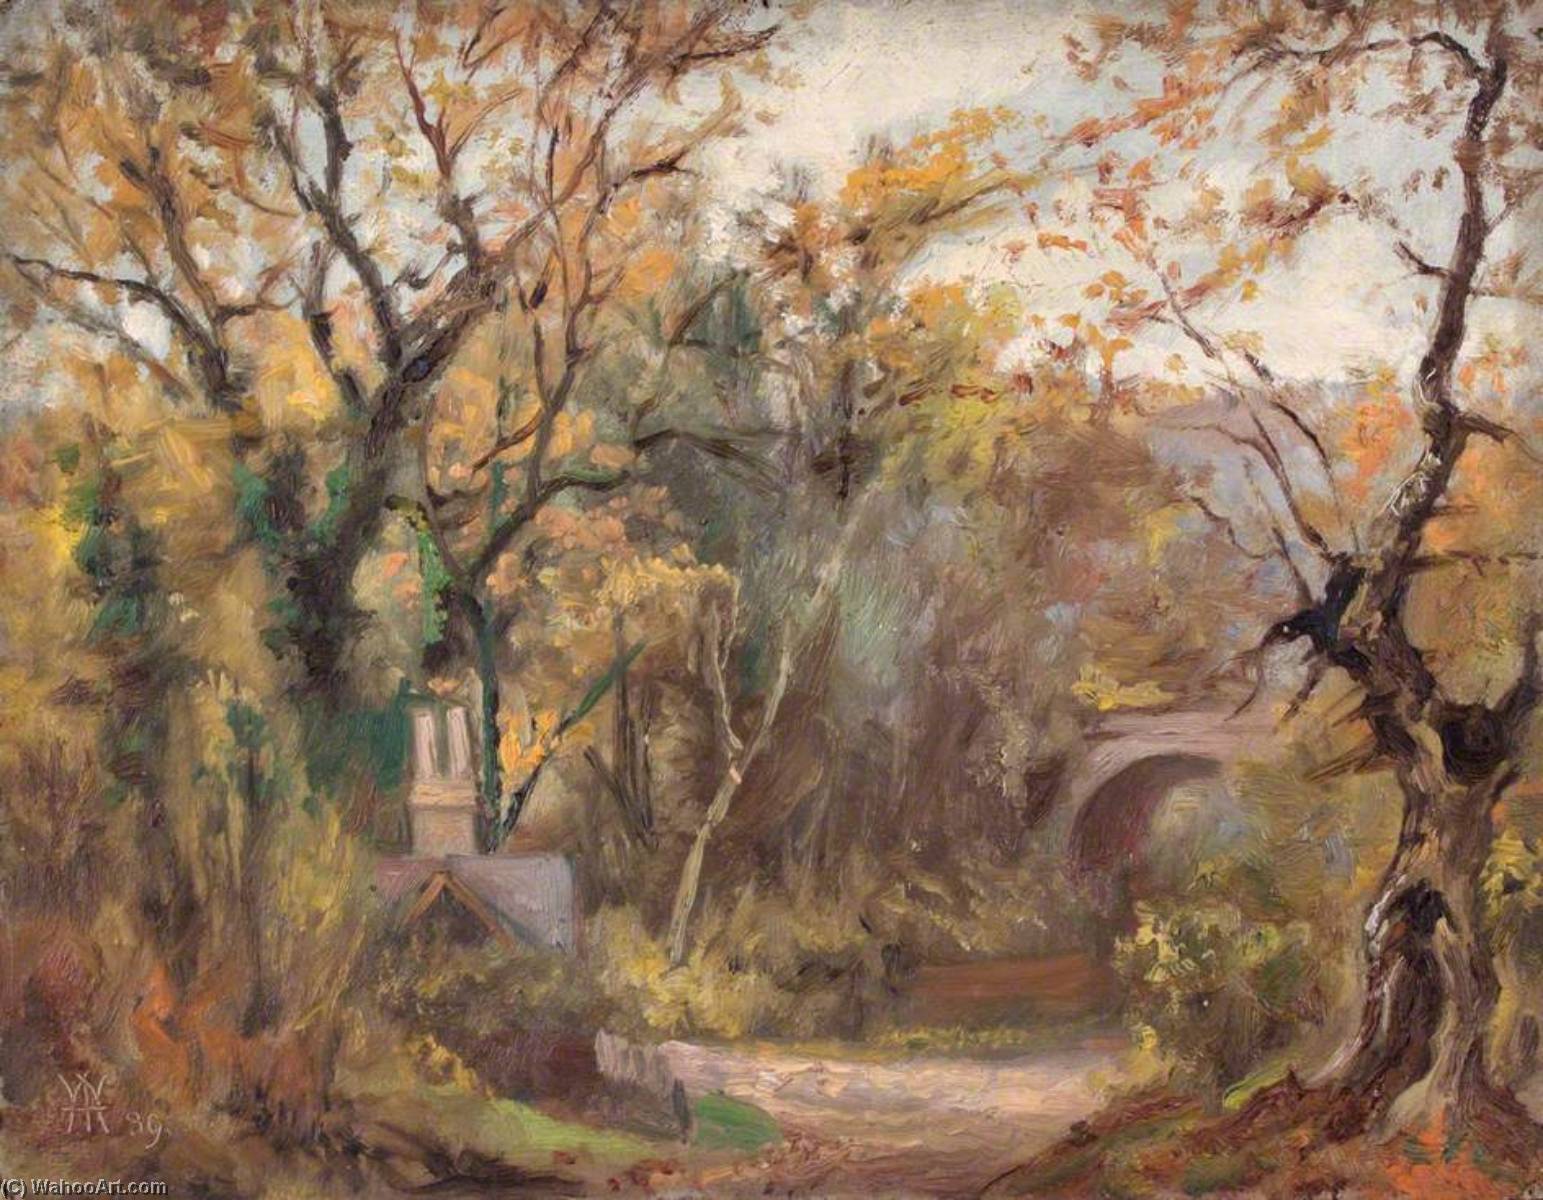 Получить Репродукции Картин Road to Purley Town, Surrey, 30 October 1889, 1889 по William Henry Hope (1835-1917) | ArtsDot.com